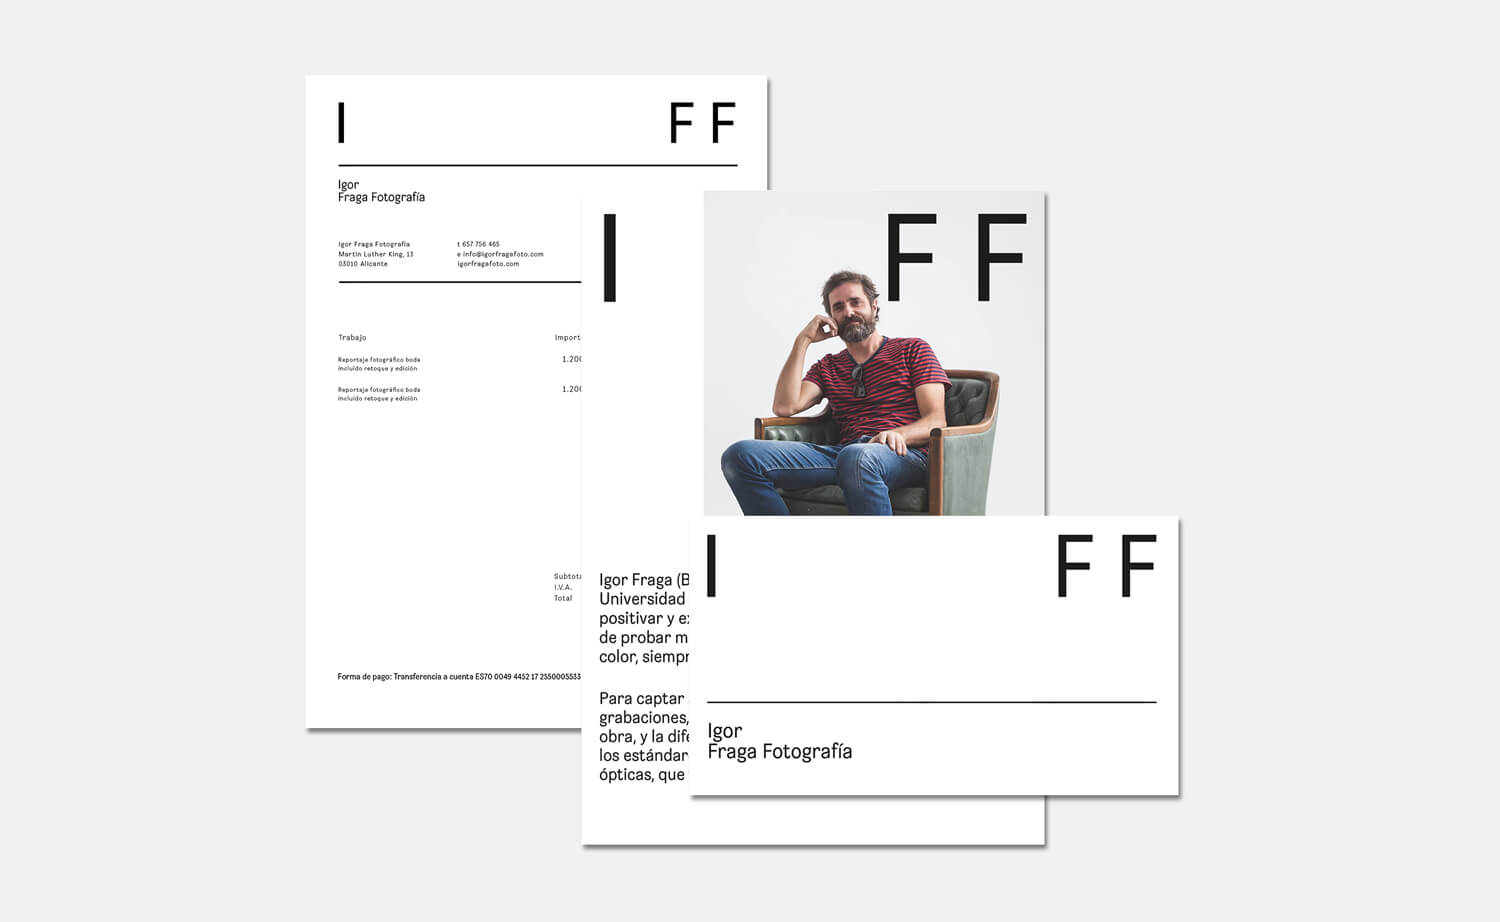 Diseño y desarrollo de identidad visual corporativa para Igor Fraga Fotografía. Detalle dossier.